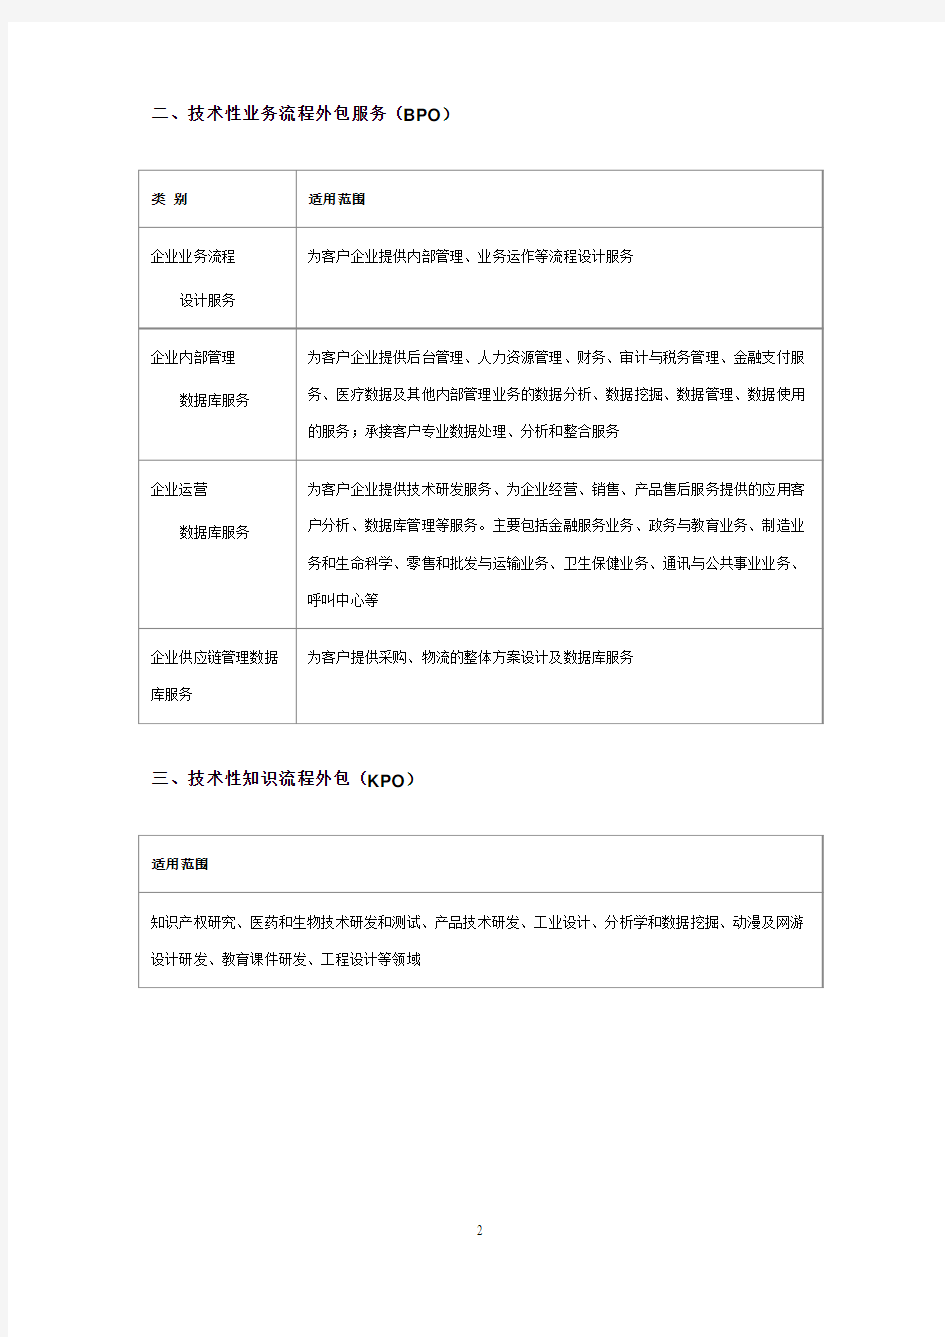 中国政府网对服务外包的定义